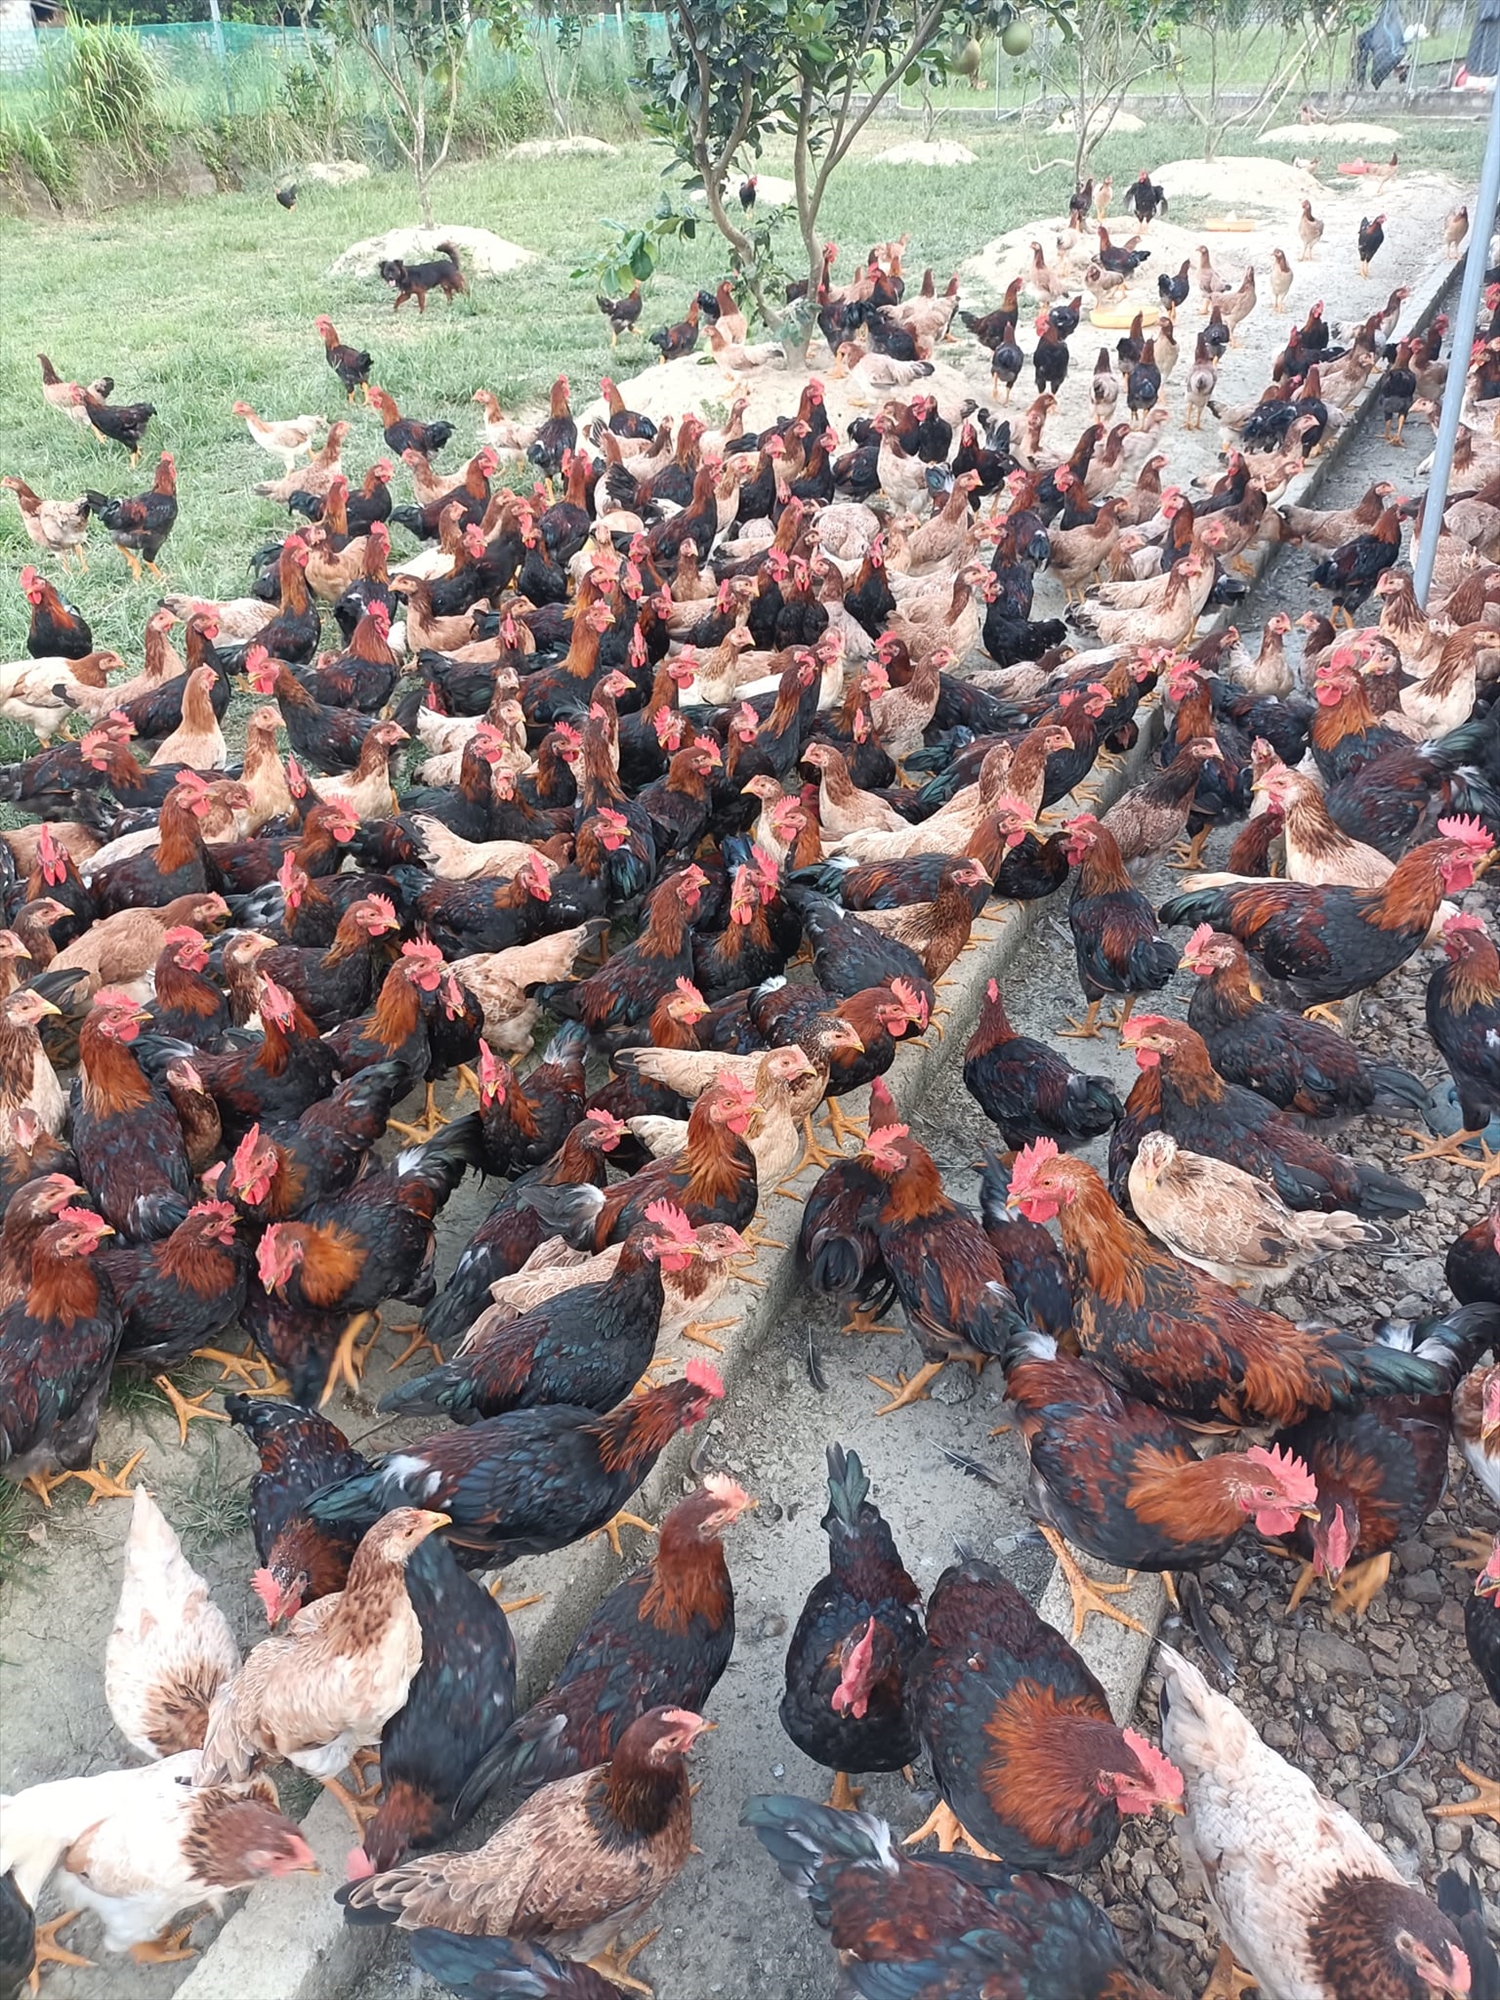 Mô hình chăn nuôi gà sạch theo tiêu chuẩn VietGAP của anh Quách Văn Bộ mang lại hiệu quả kinh tế cao